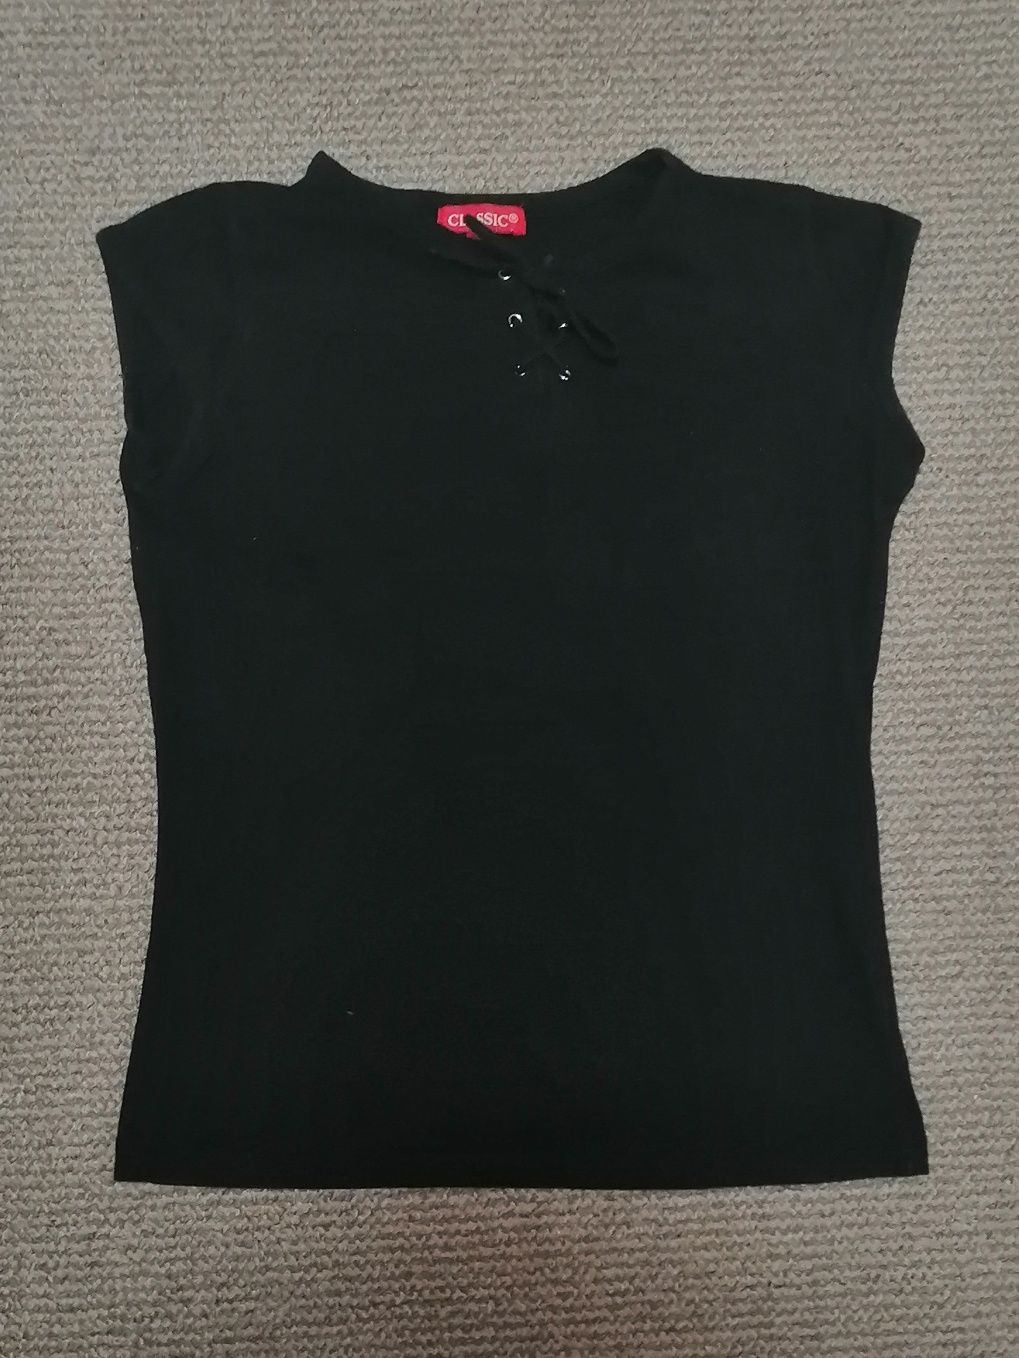 S XS Czarna bluzka koszulka T-shirt bluzeczka lato